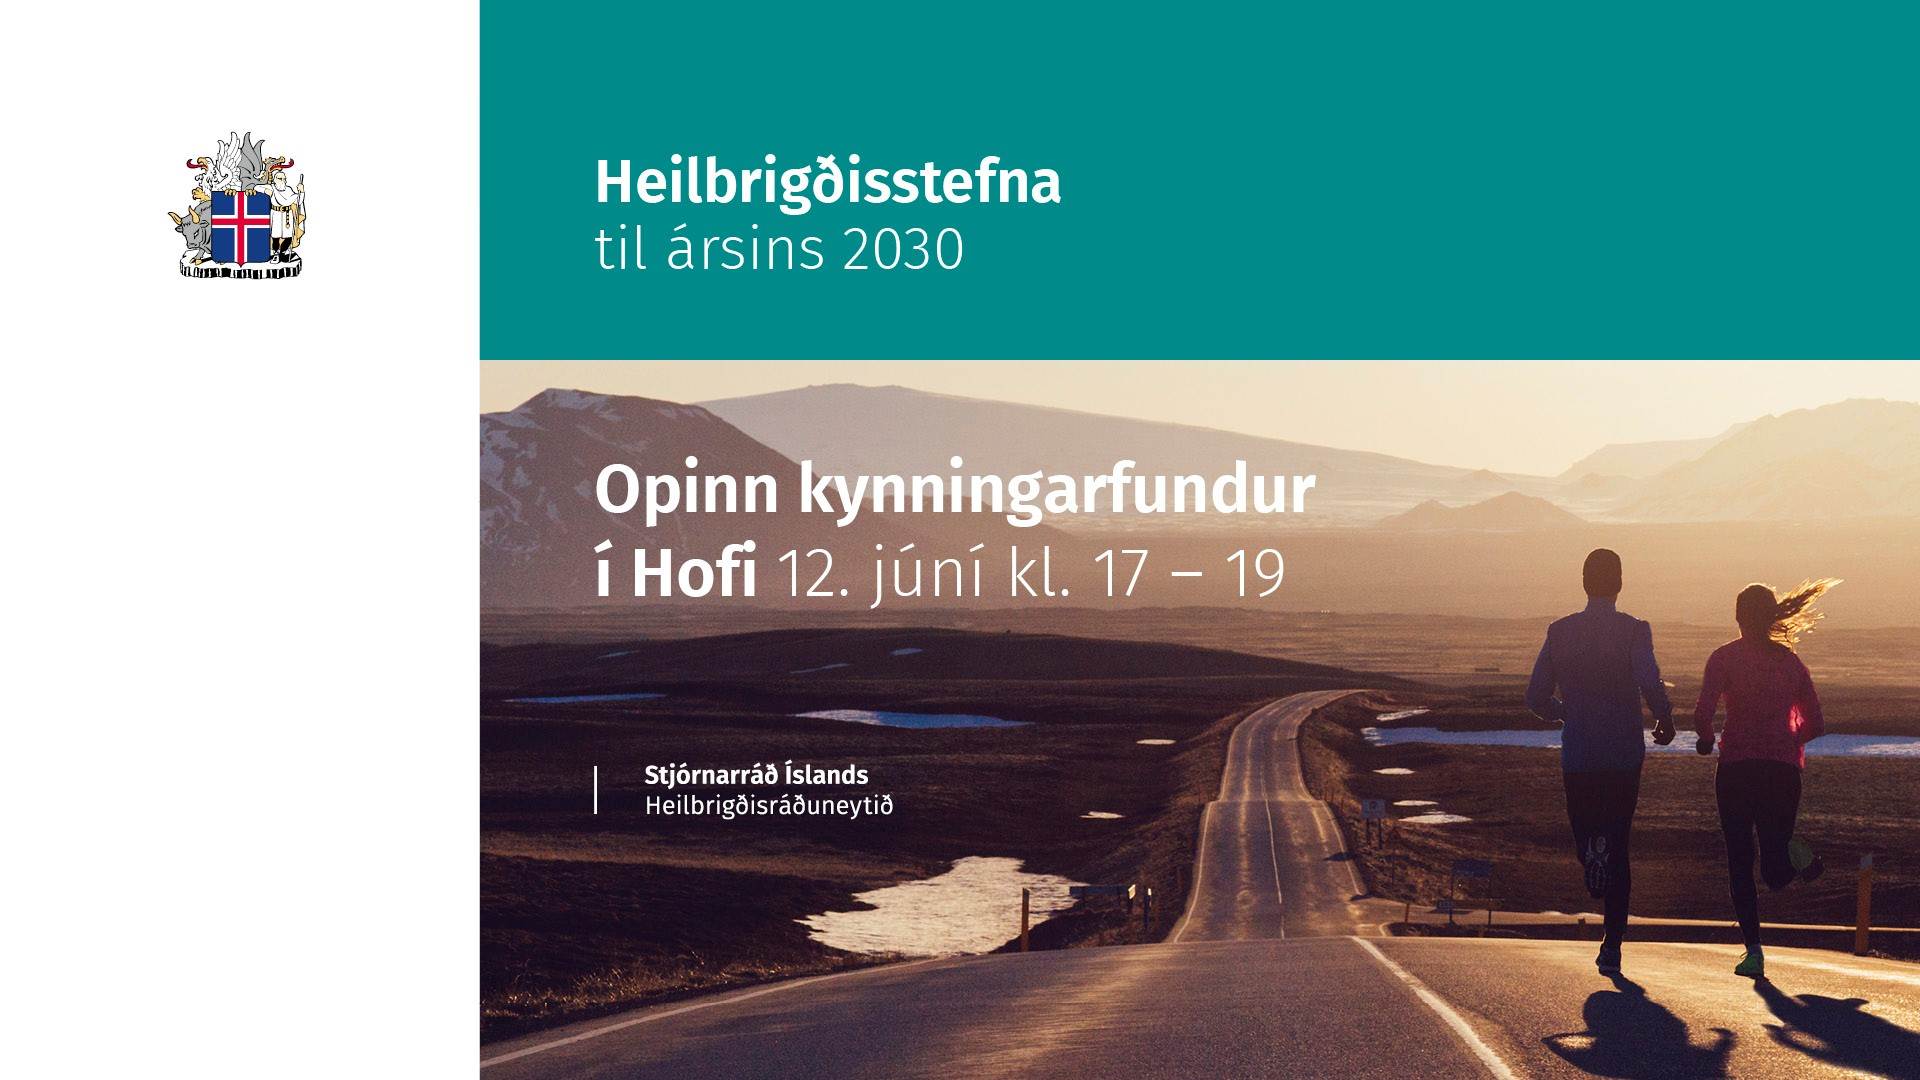 Heilbrigðisstefna til ársins 2030 kynnt 12. júní í Hofi á Akureyri - mynd